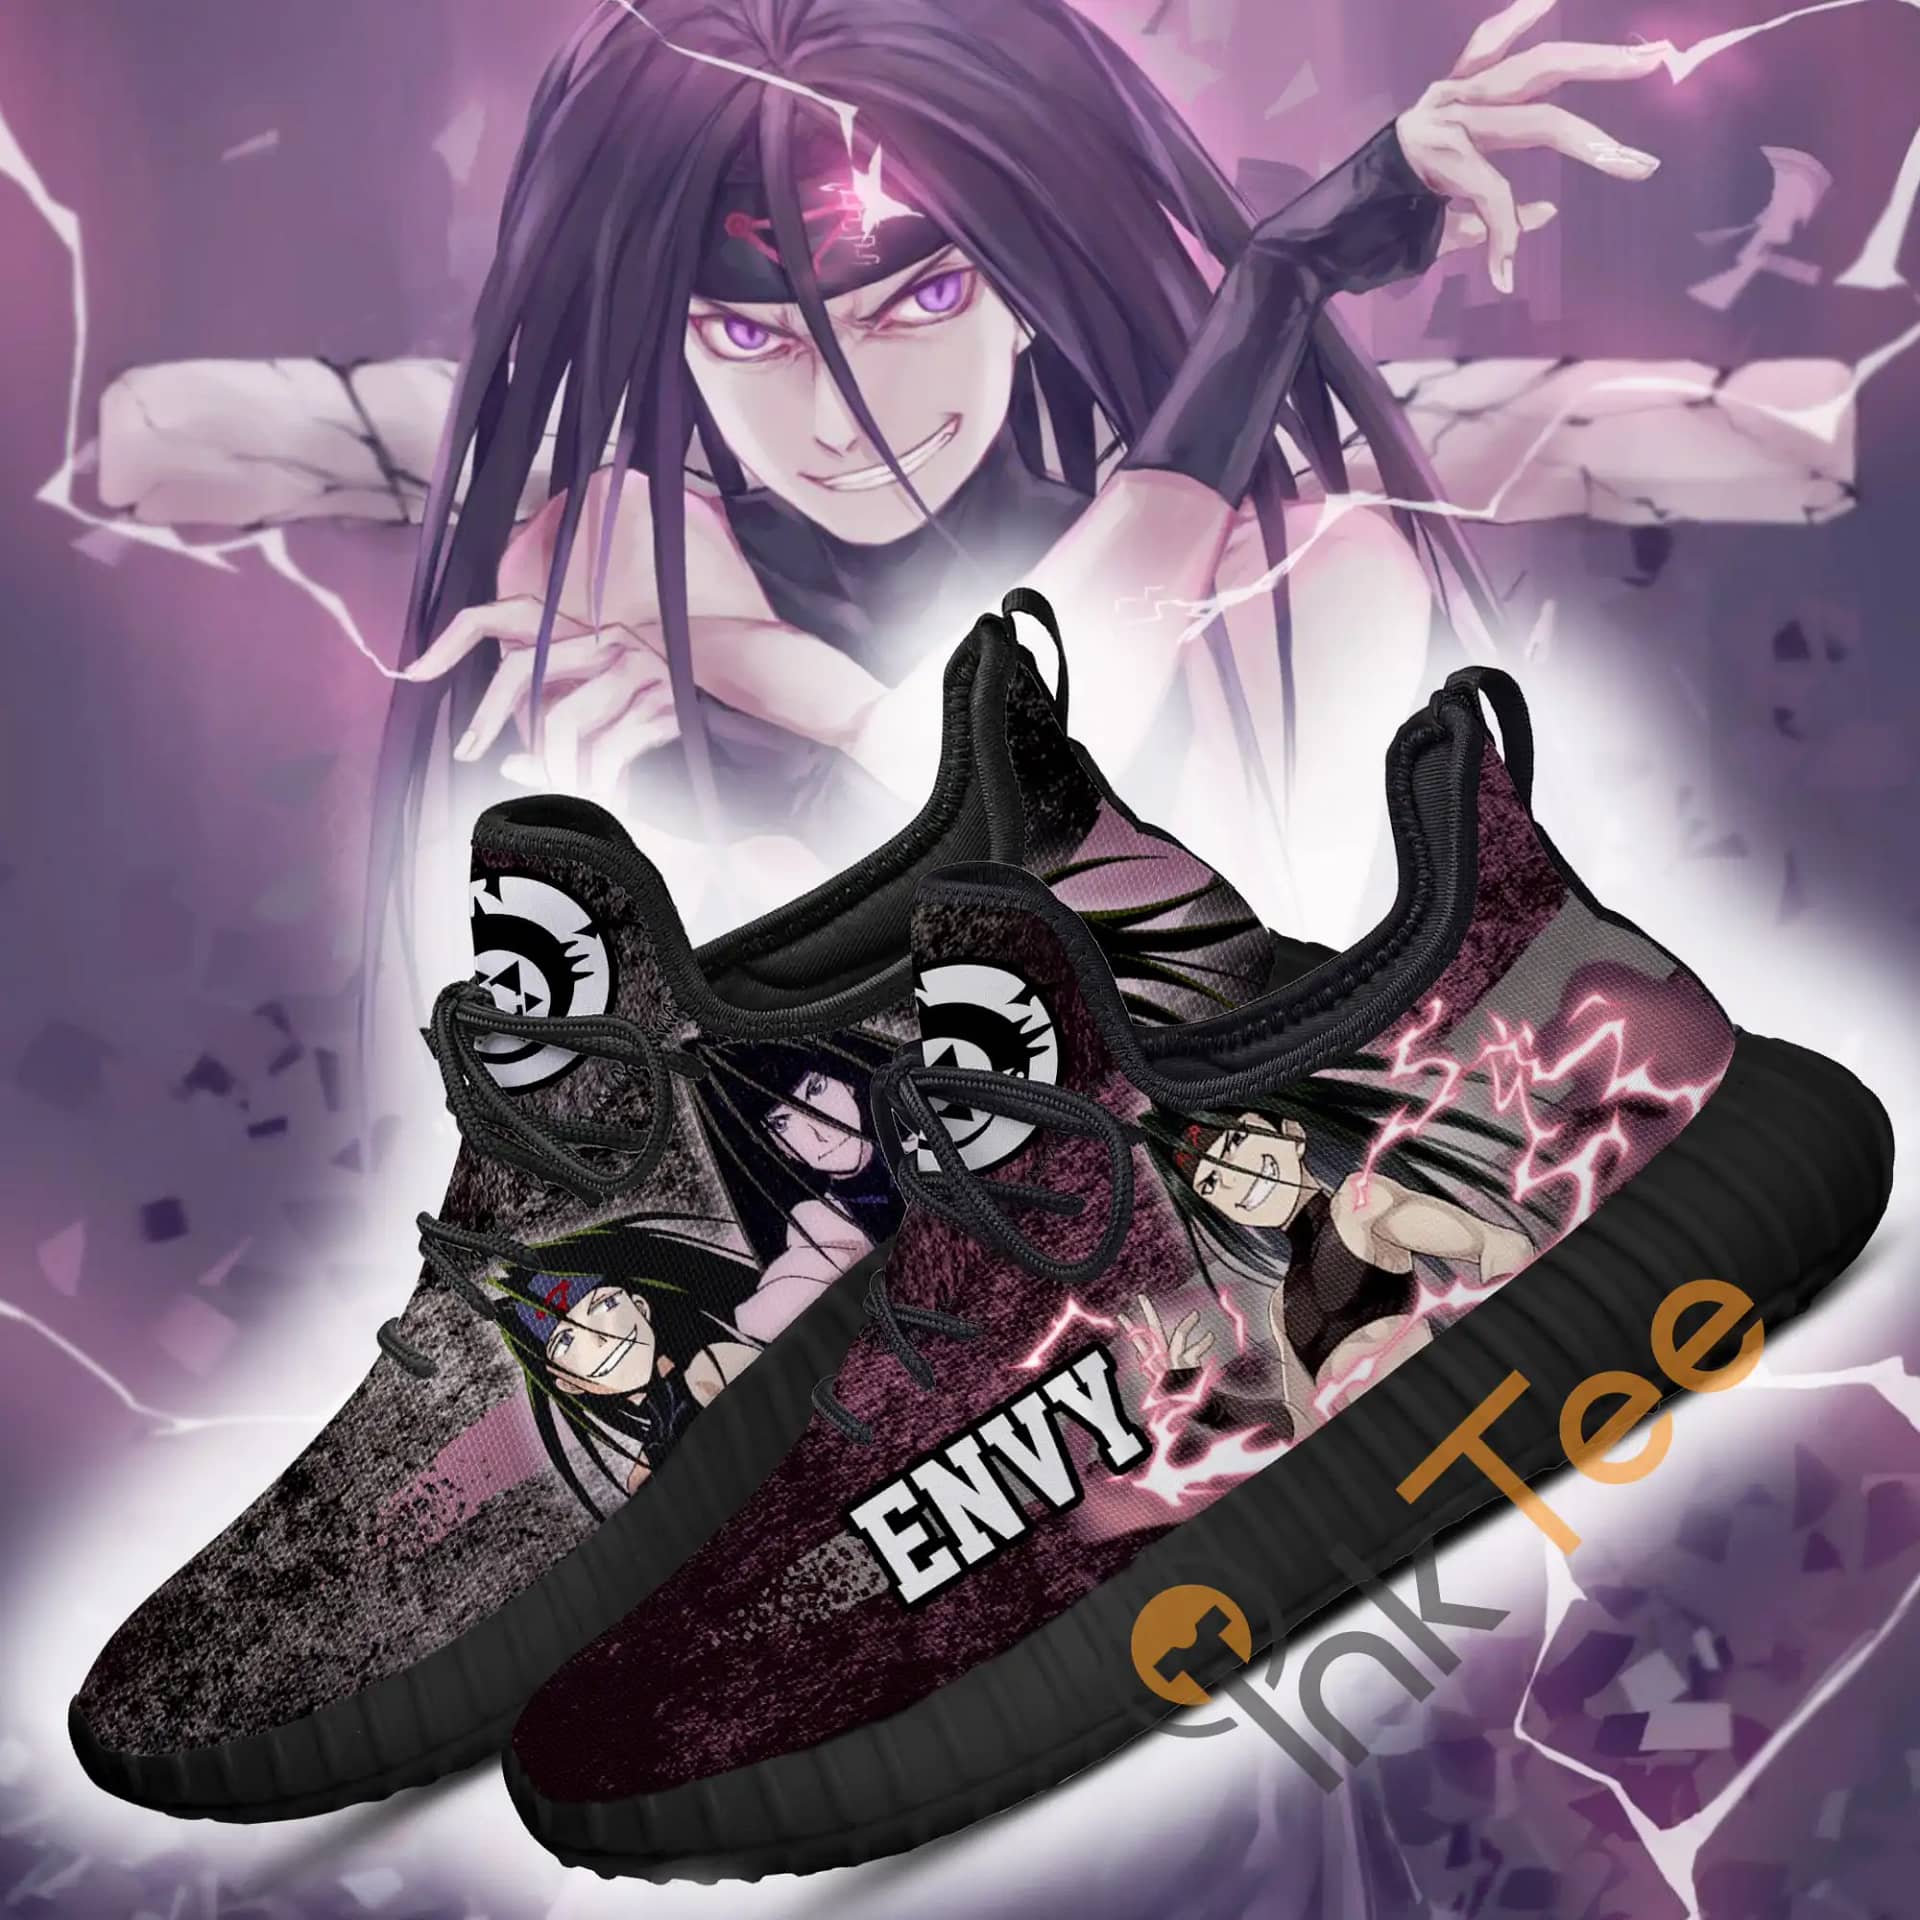 Fullmetal Alchemist Envy Character Anime Amazon Reze Shoes